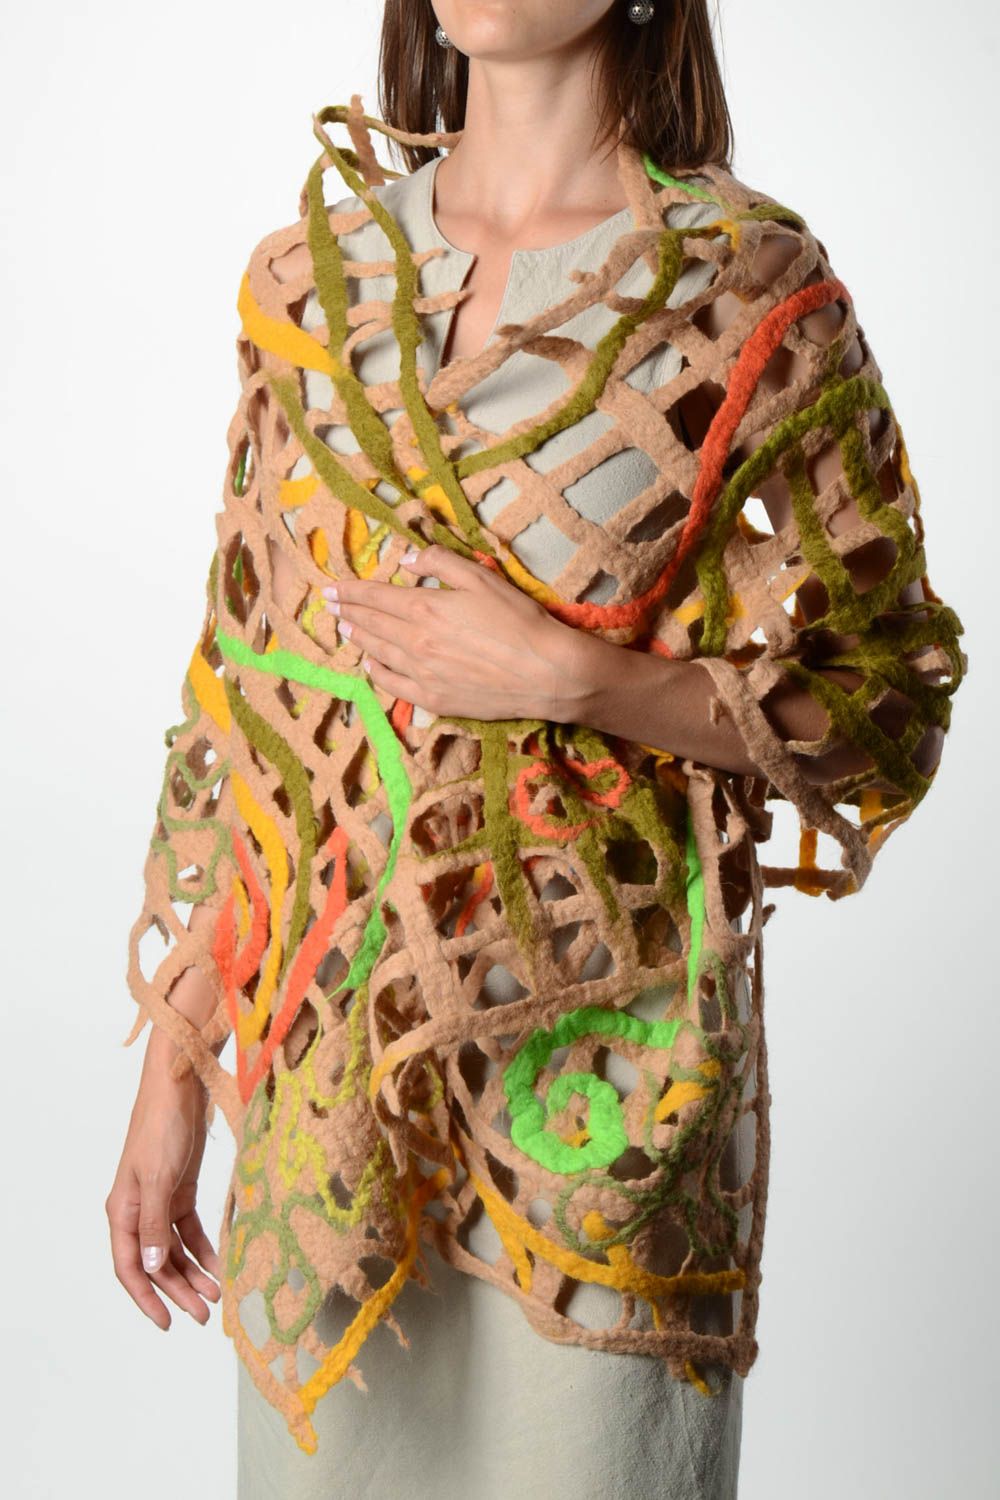 Женский шарф палантин ручной работы валяный палантин шерстяной шарф сетчатый фото 1